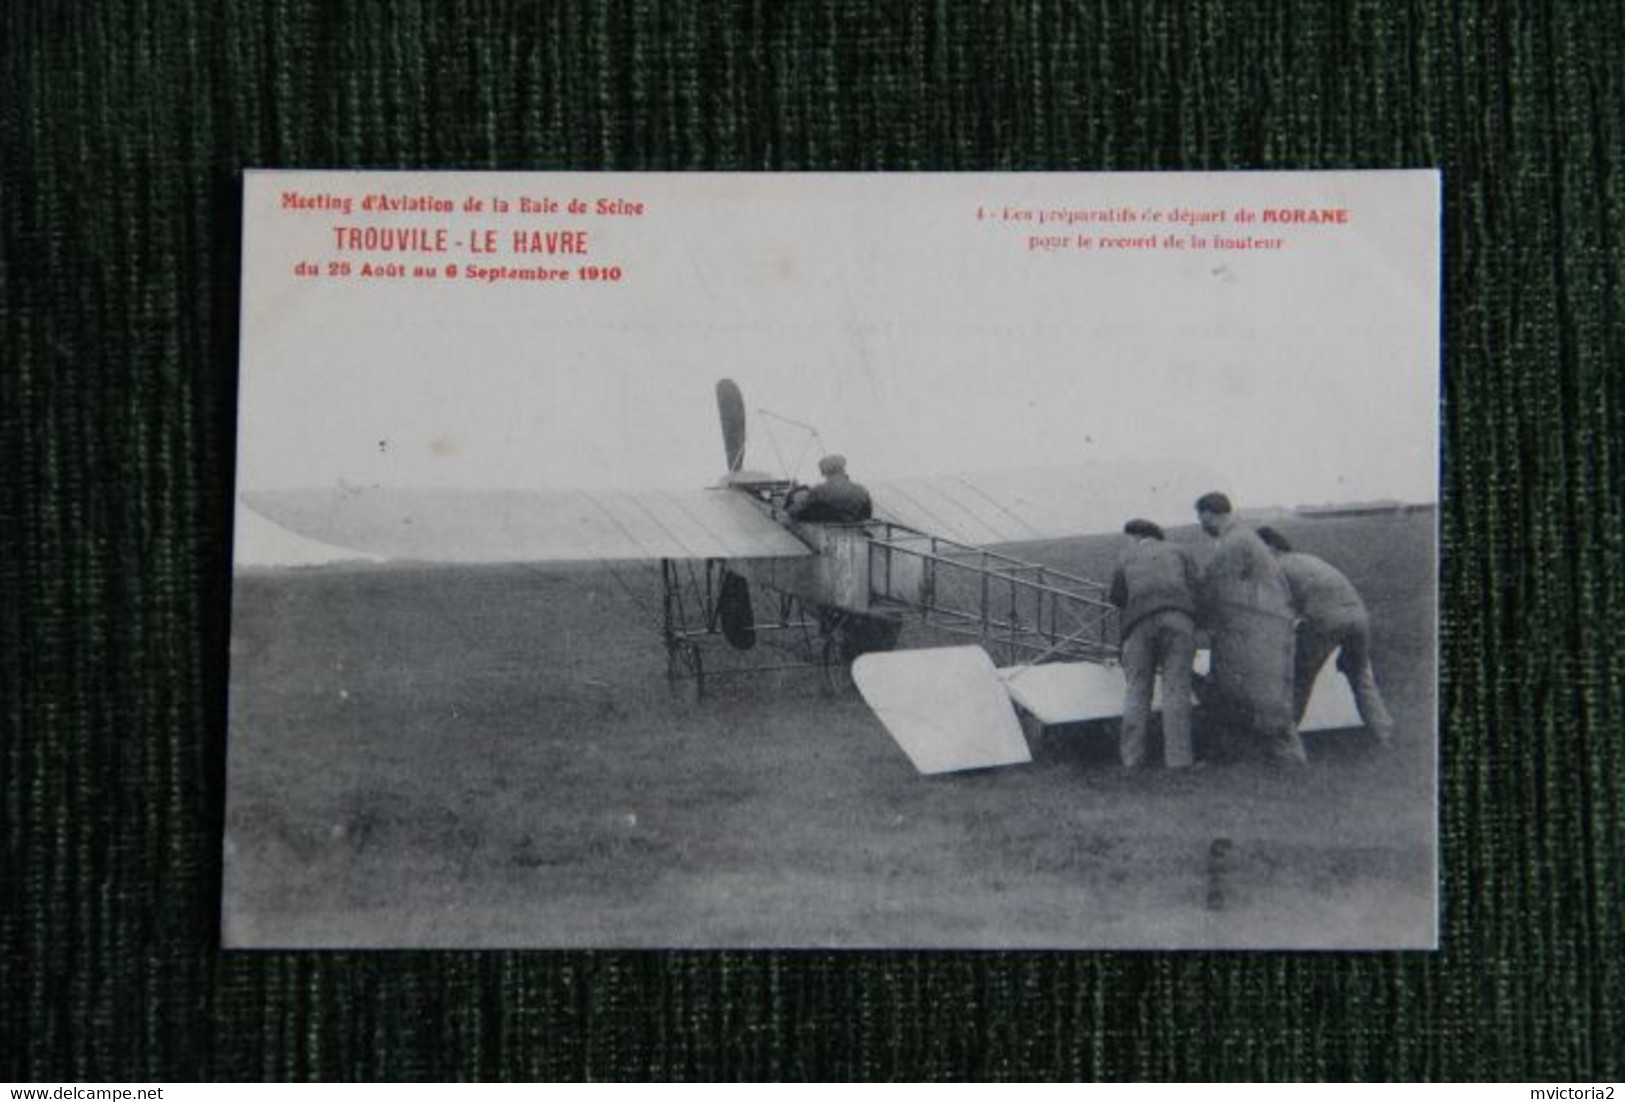 Metting D'aviation TROUVILLE - LE HAVRE, Du 25 Aout Au 6 Septembre 1910 : Préparatifs De Départ De MORANE .... - ....-1914: Precursori